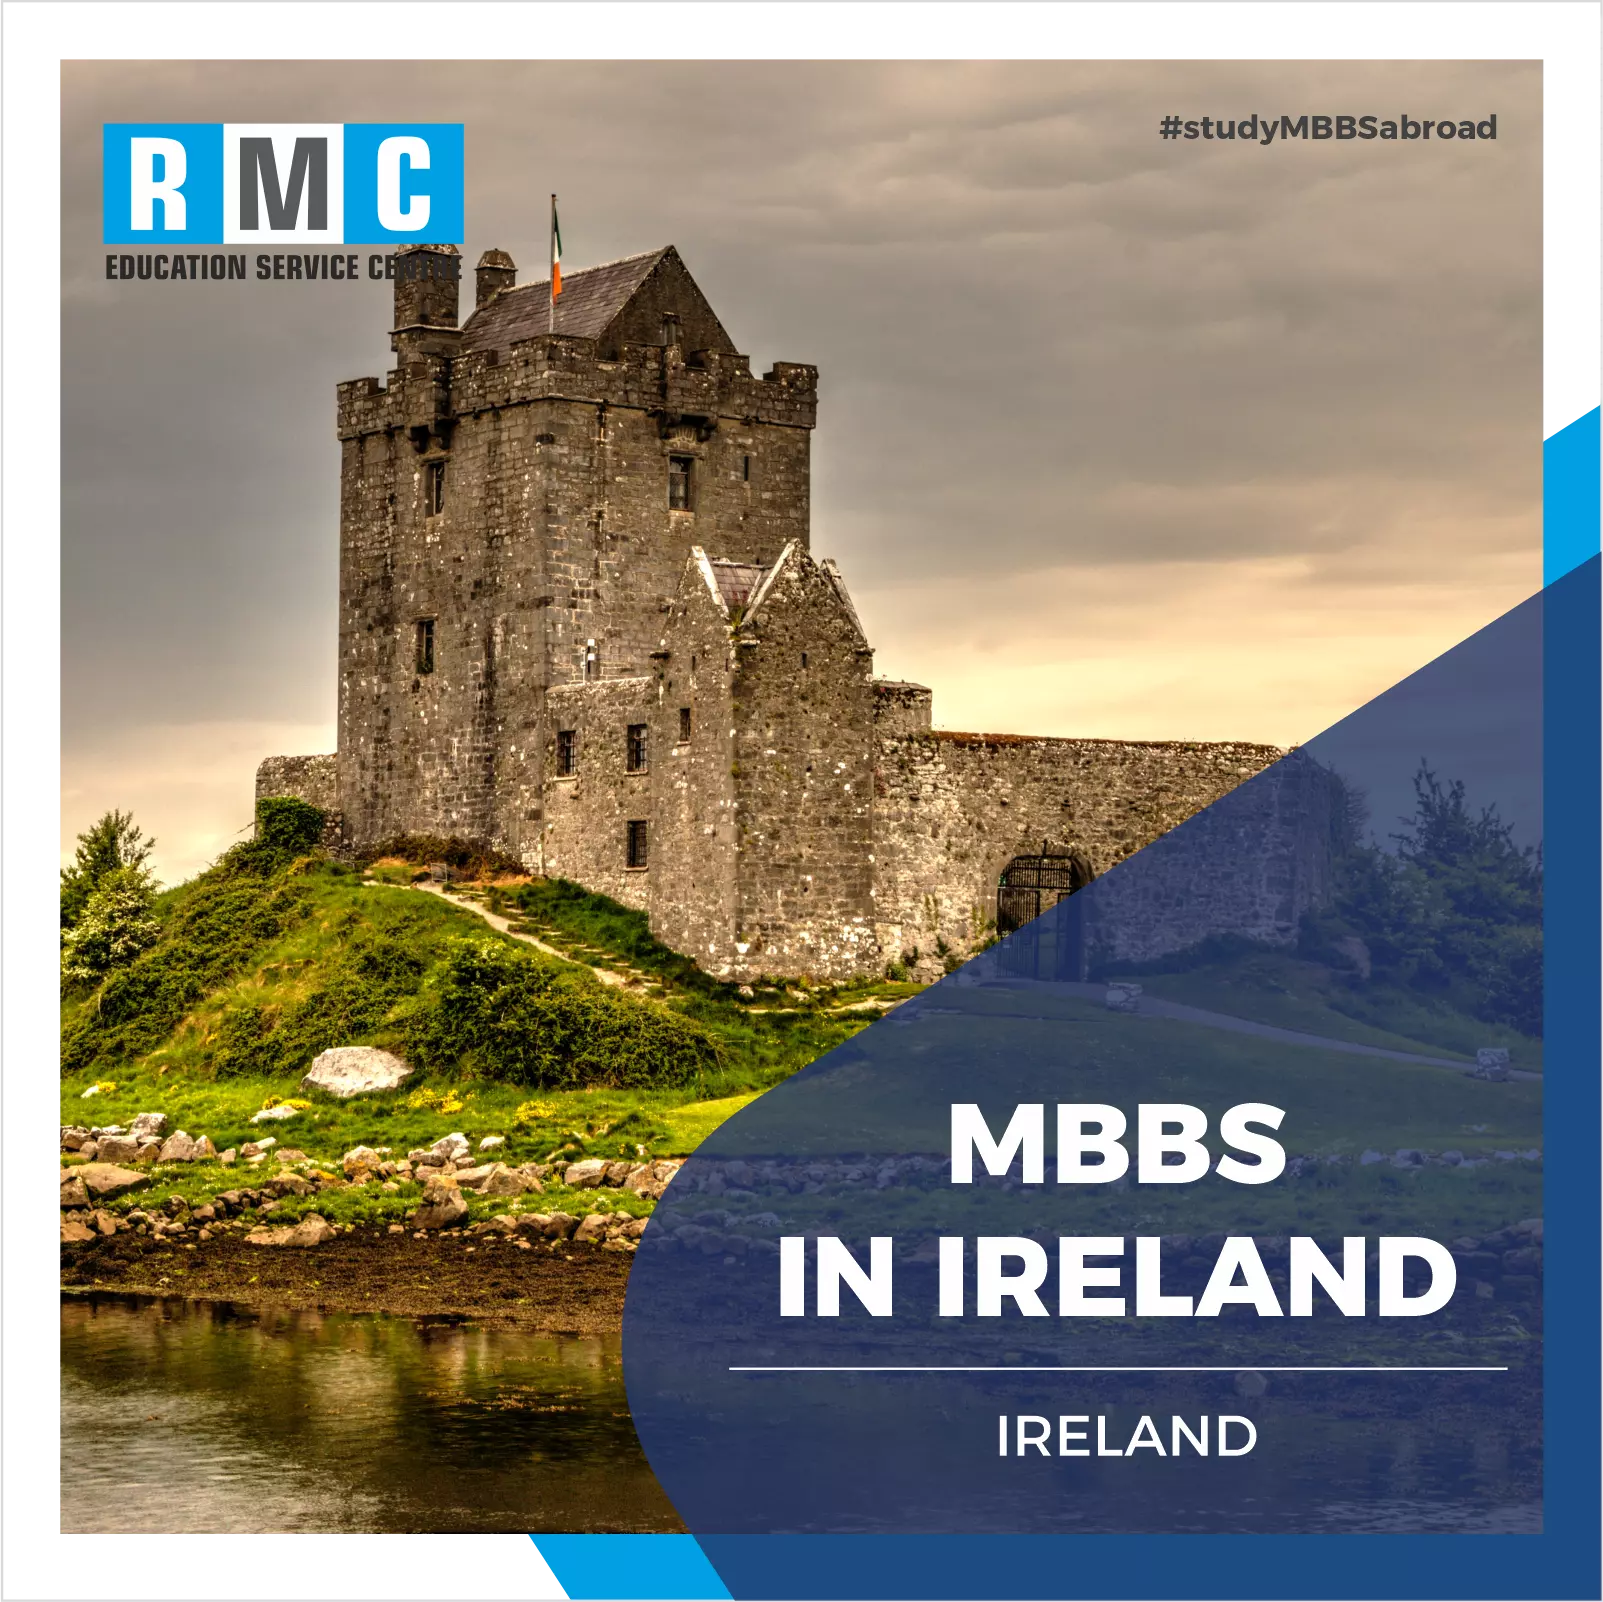 MBBS in Ireland